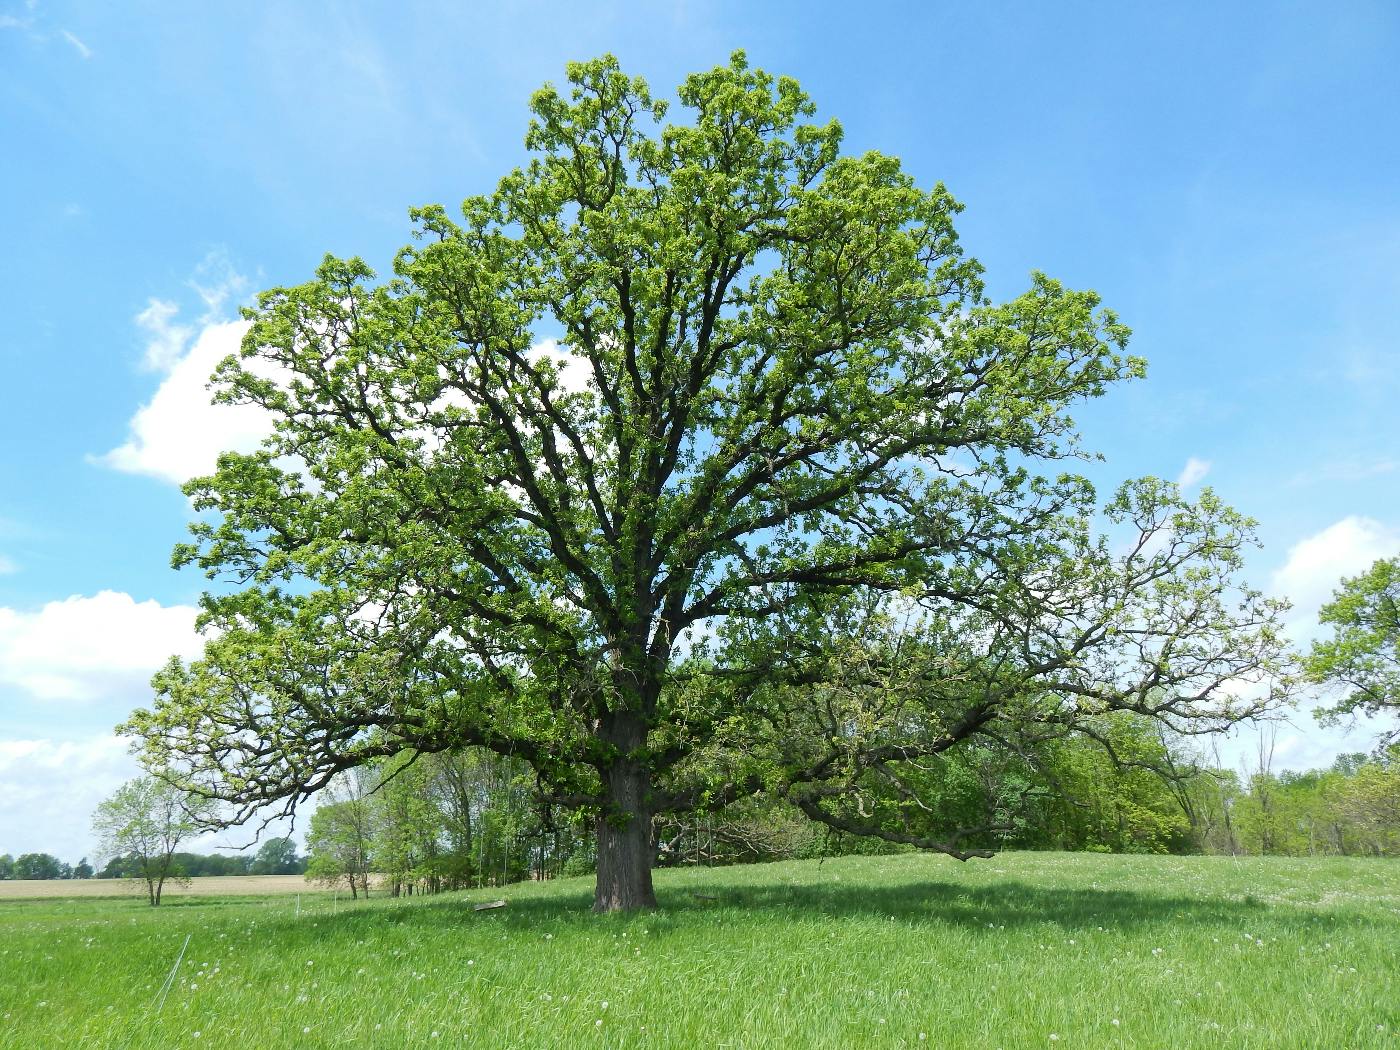 An oak tree in a field